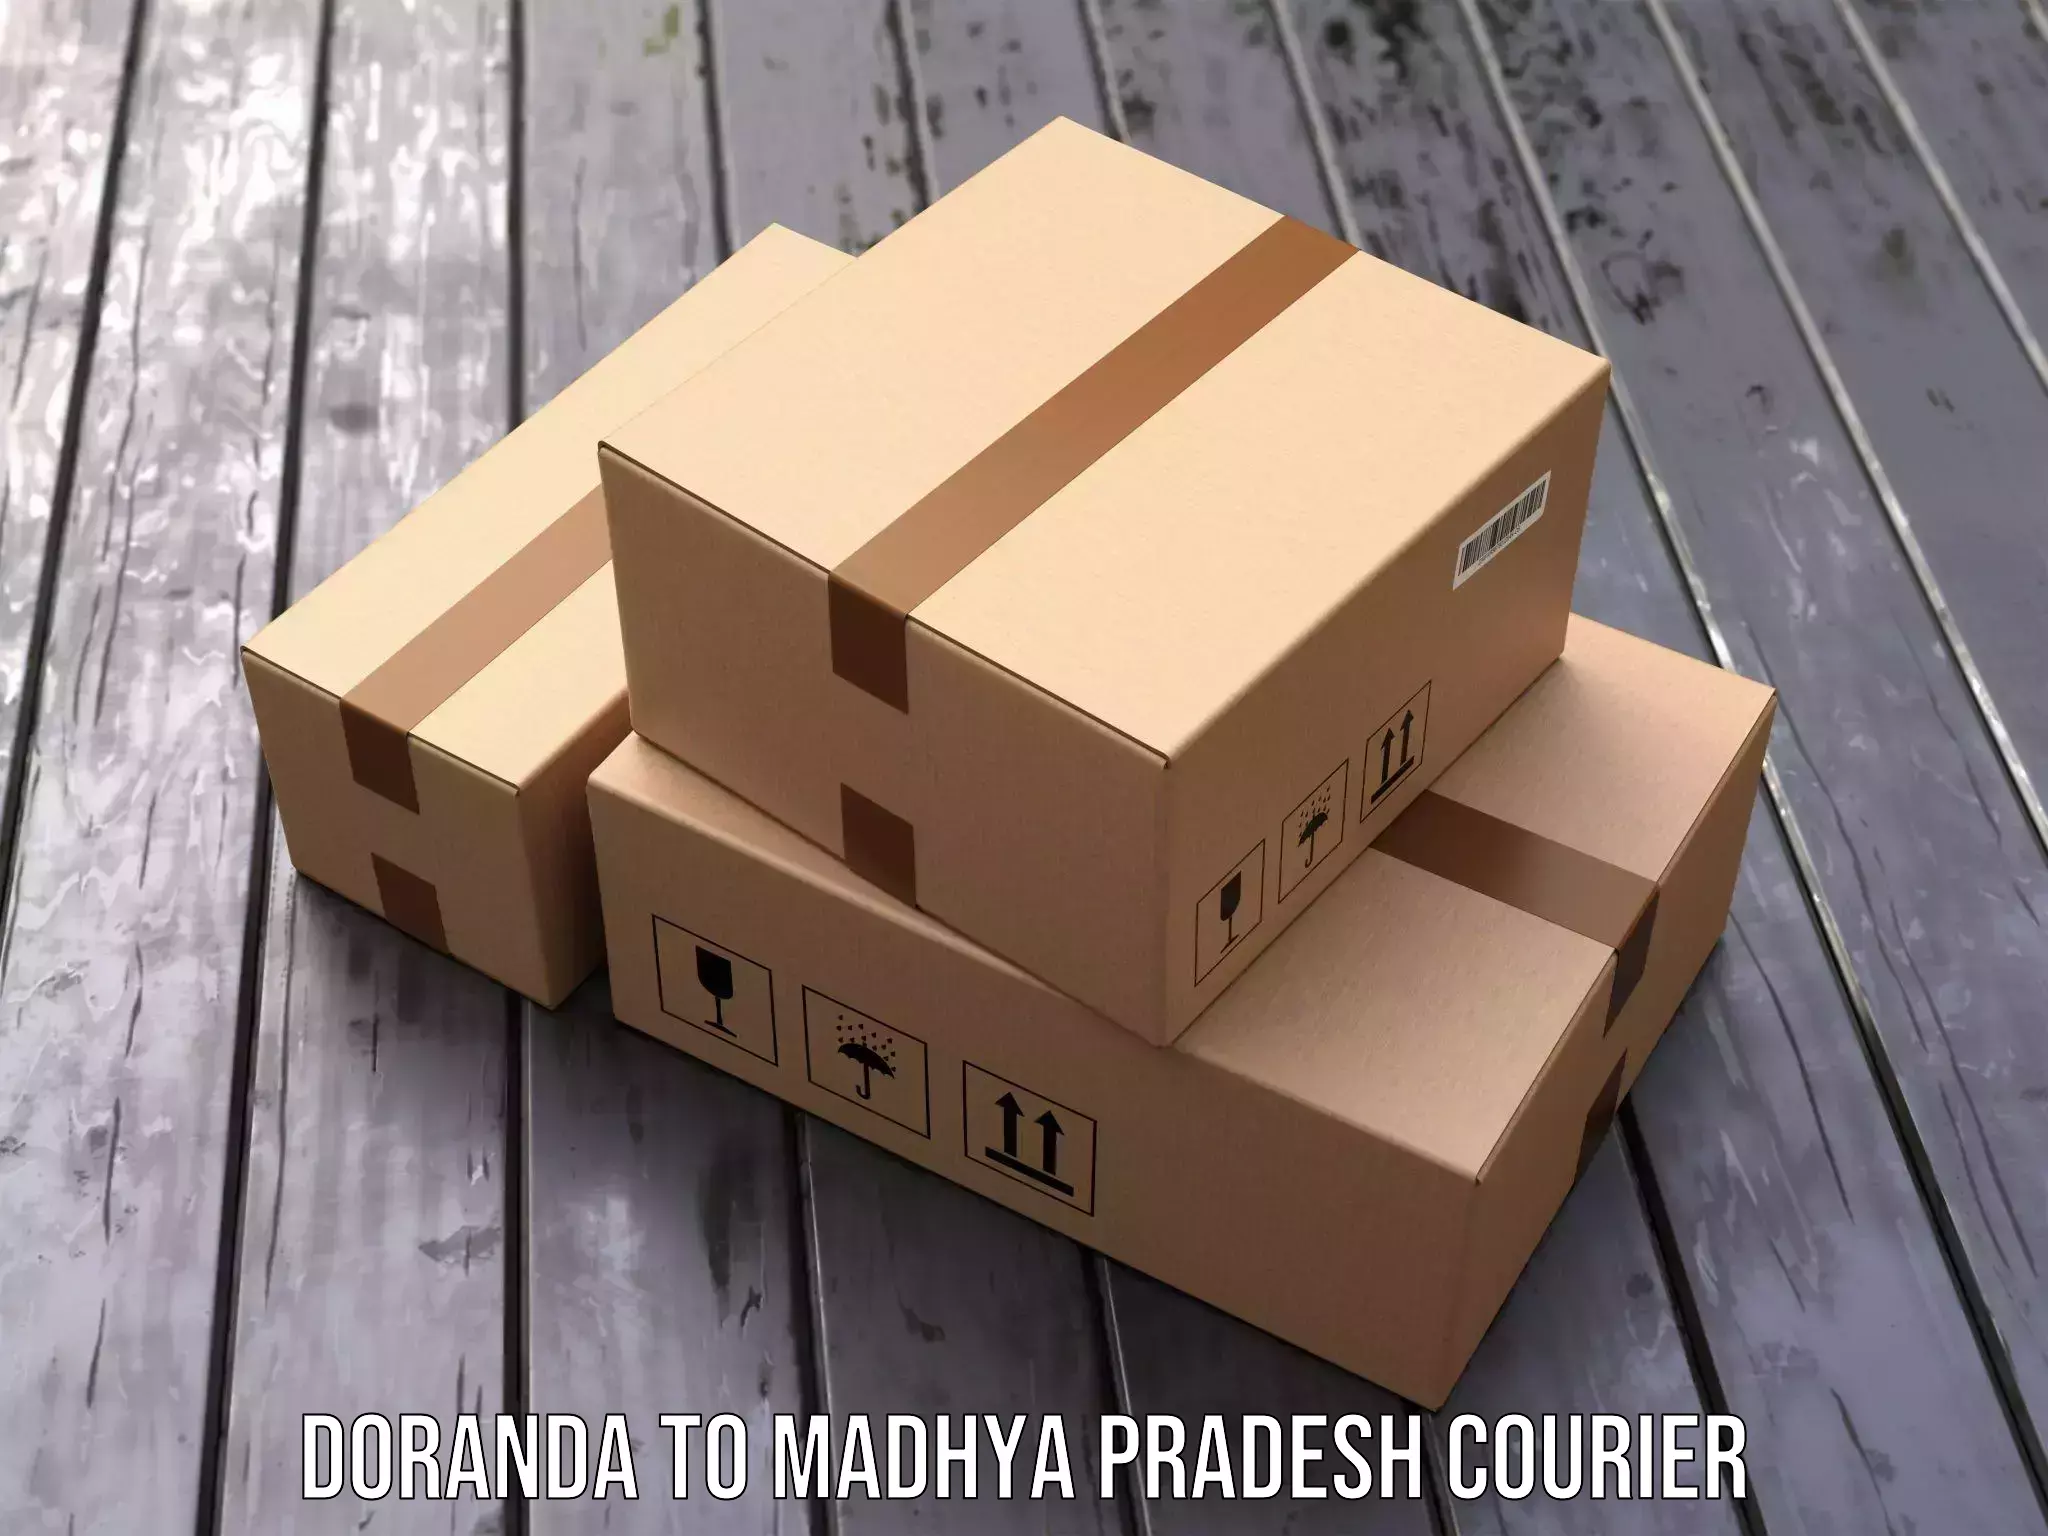 Full-service courier options Doranda to Umaria